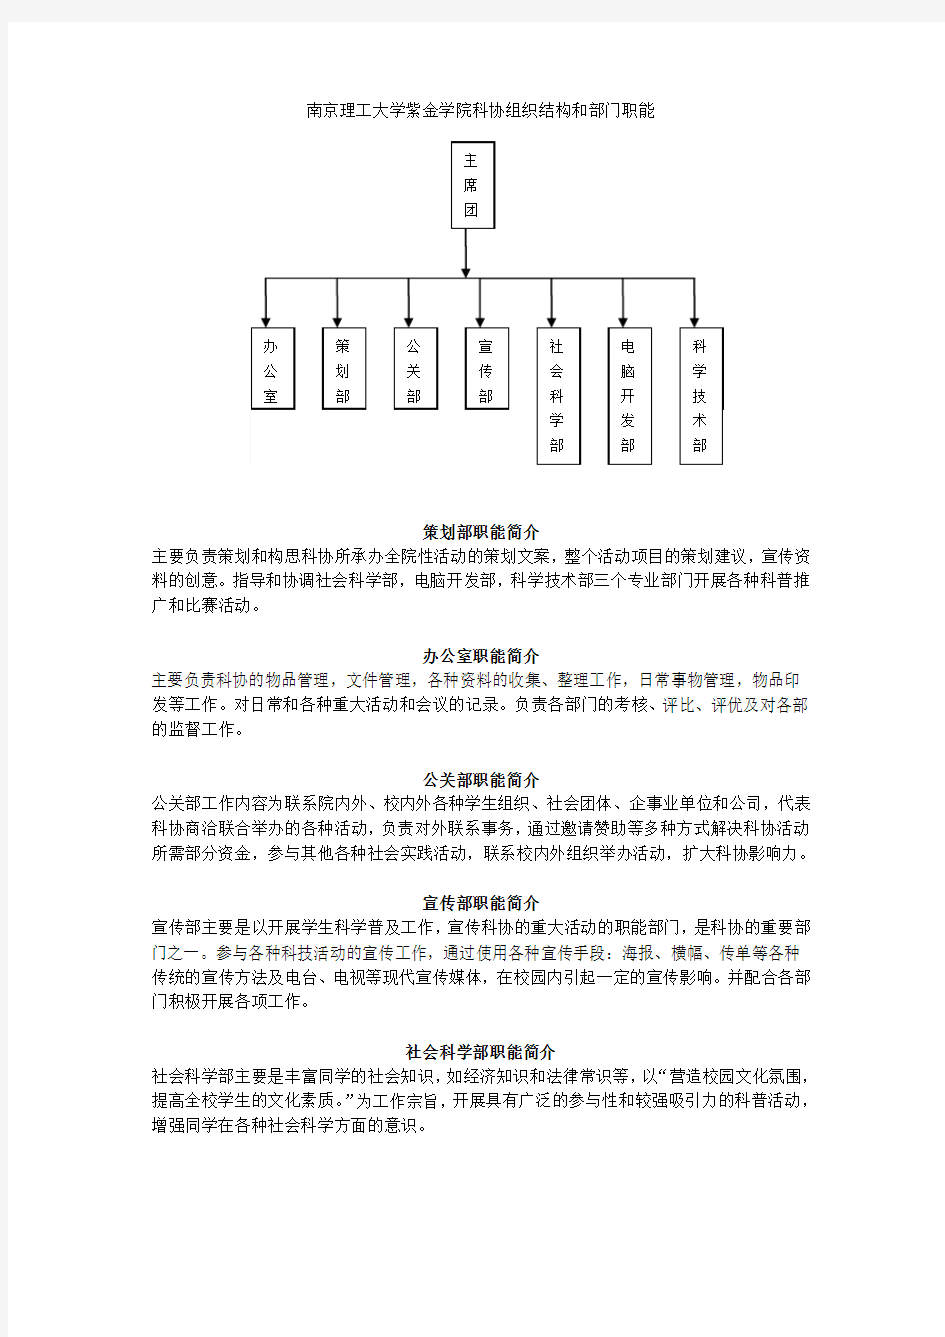 南京理工大学紫金学院科协组织结构和部门职能